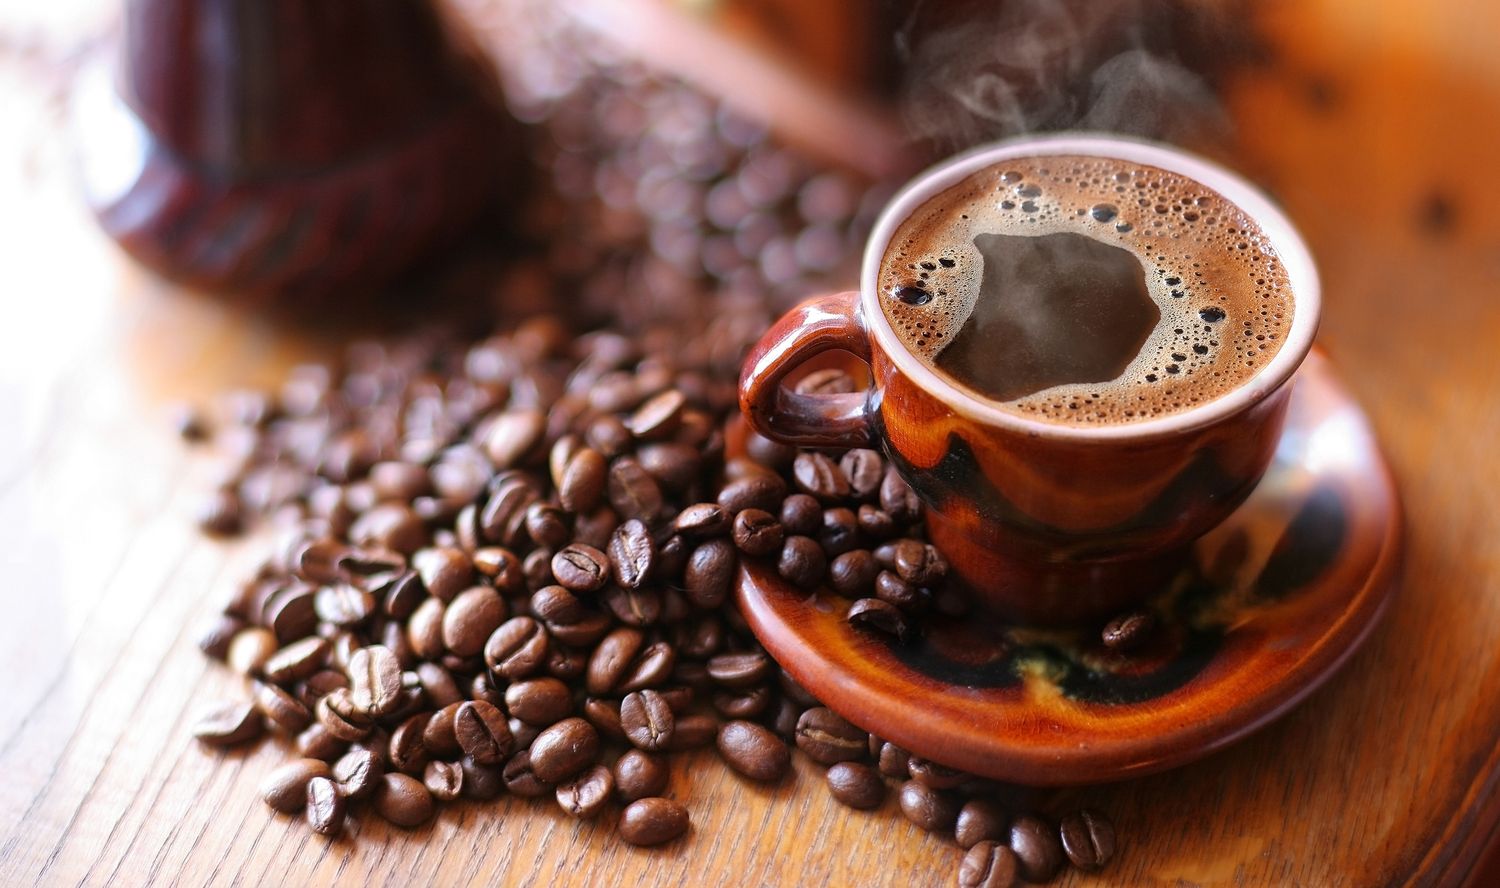 Учёные выяснили, что кофе способен защитить печень от алкоголя